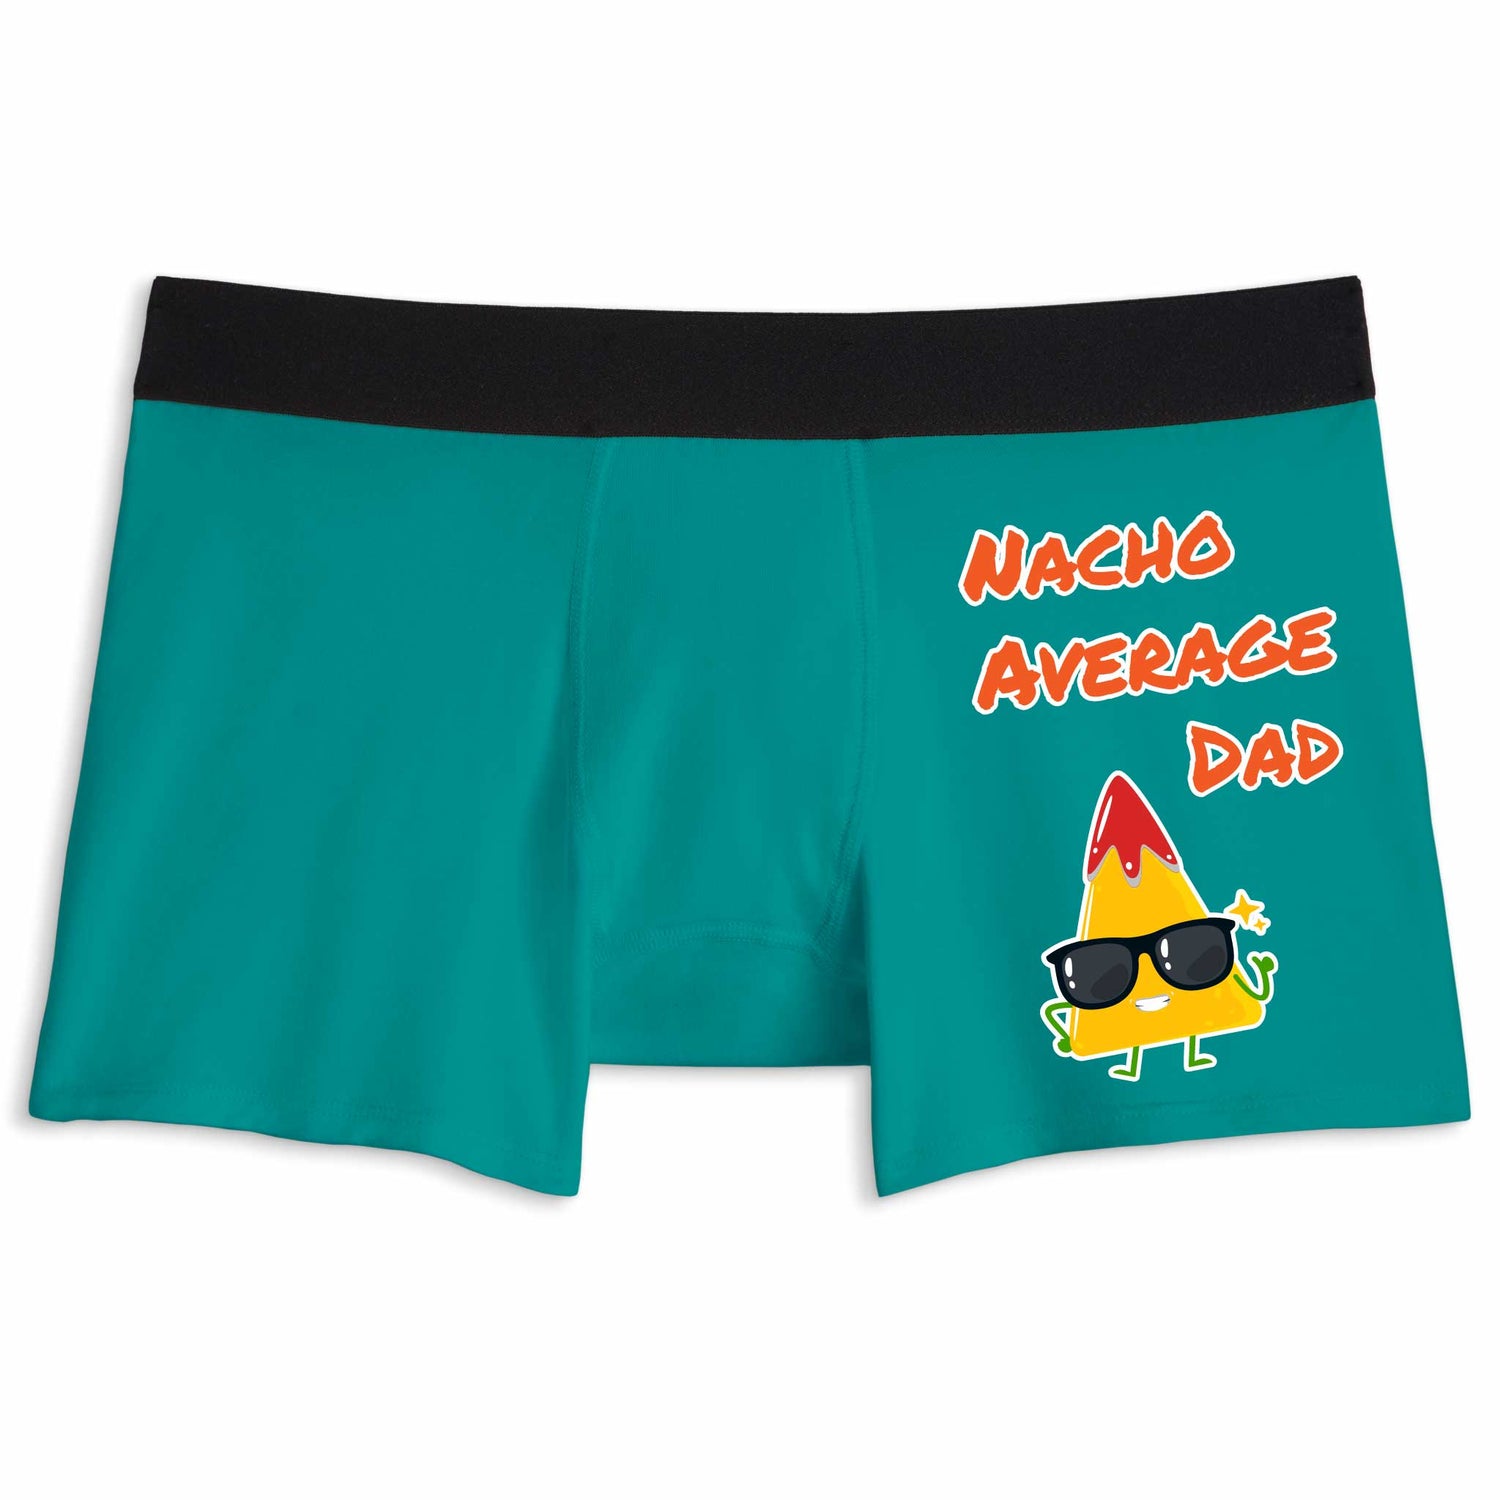 Nacho average dad | Boxer briefs underwear